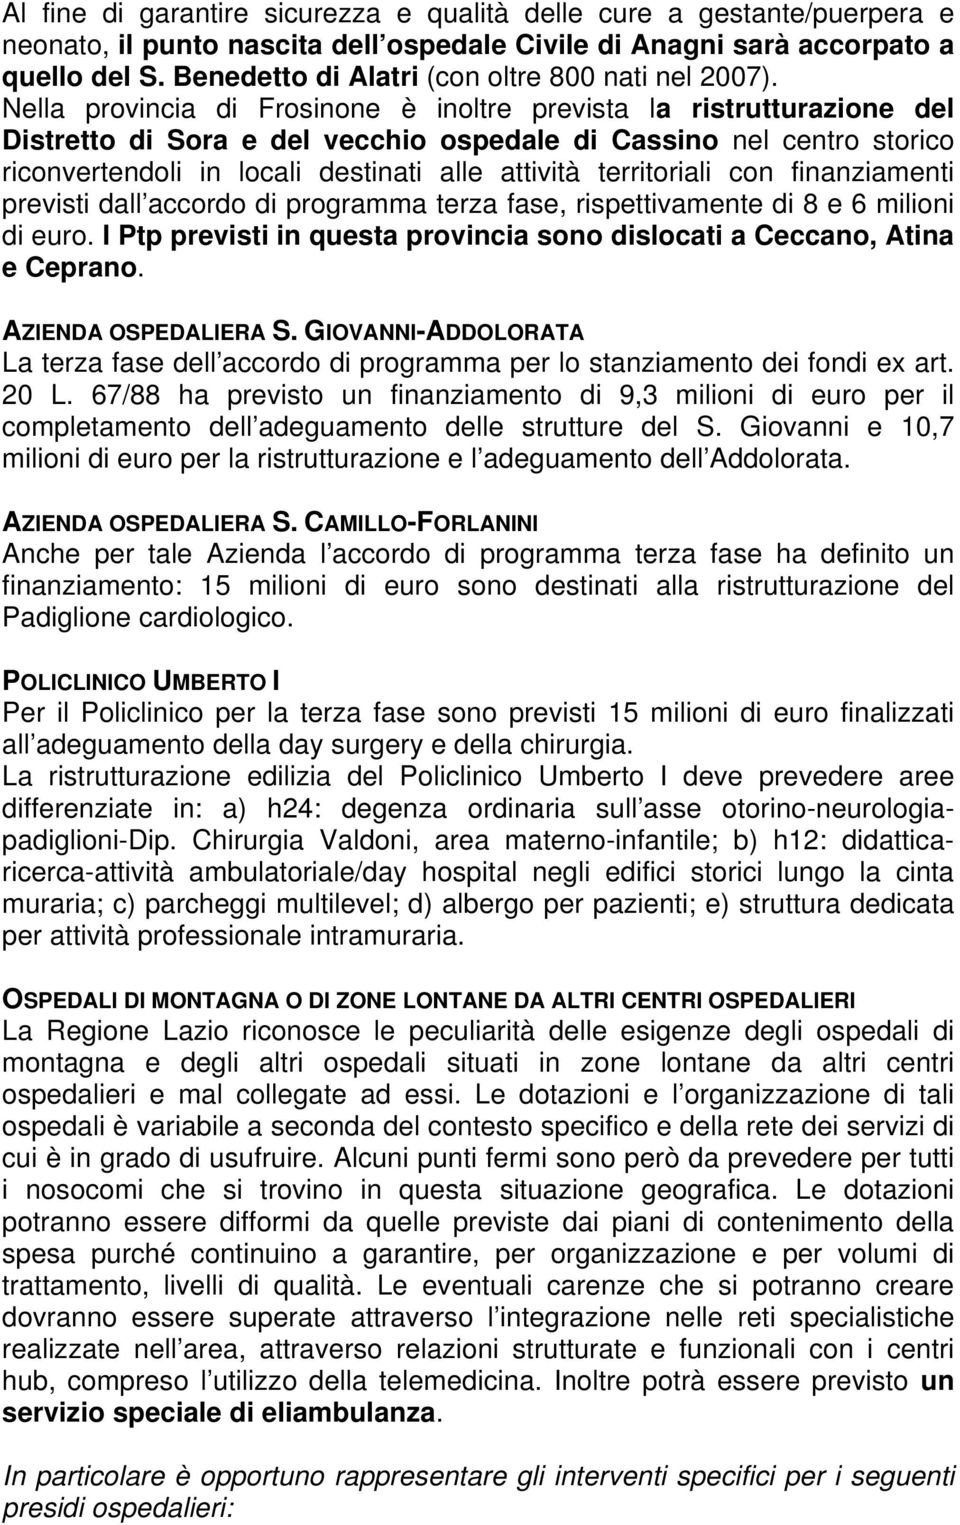 Nella provincia di Frosinone è inoltre prevista la ristrutturazione del Distretto di Sora e del vecchio ospedale di Cassino nel centro storico riconvertendoli in locali destinati alle attività